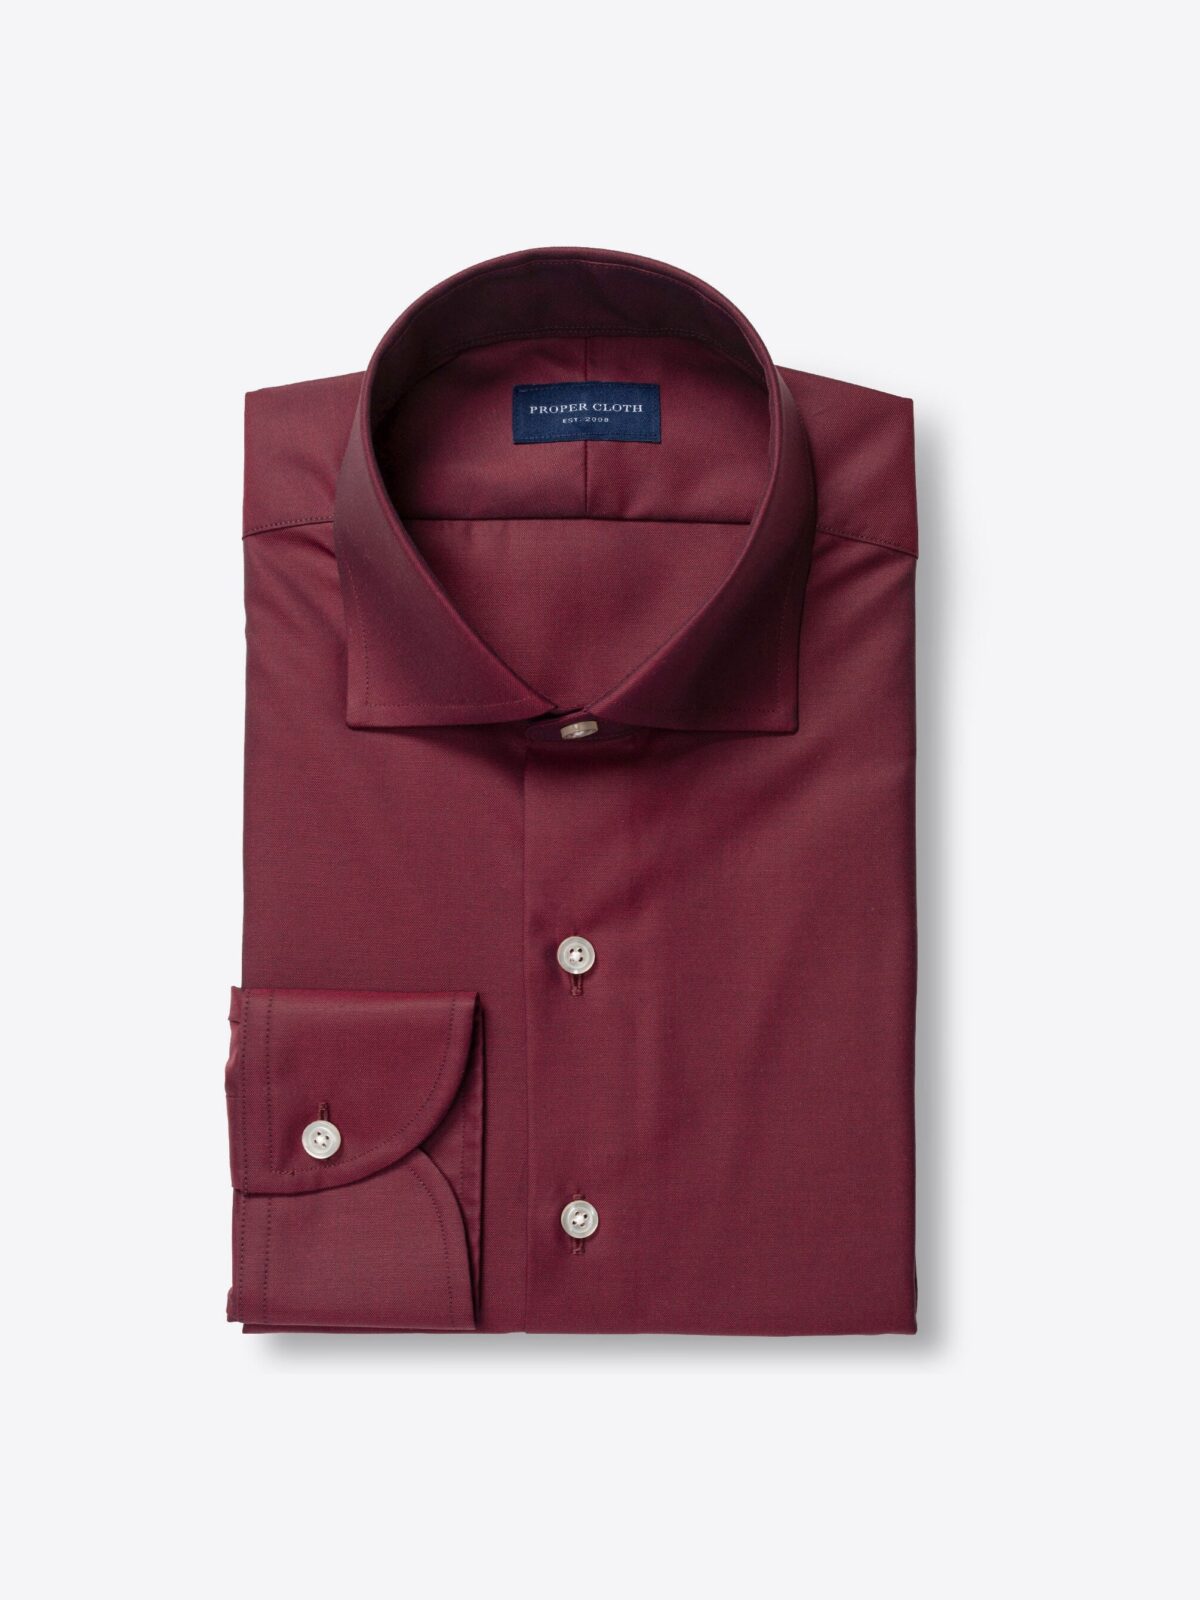 Greenwich Burgundy Twill Shirt by Proper Cloth